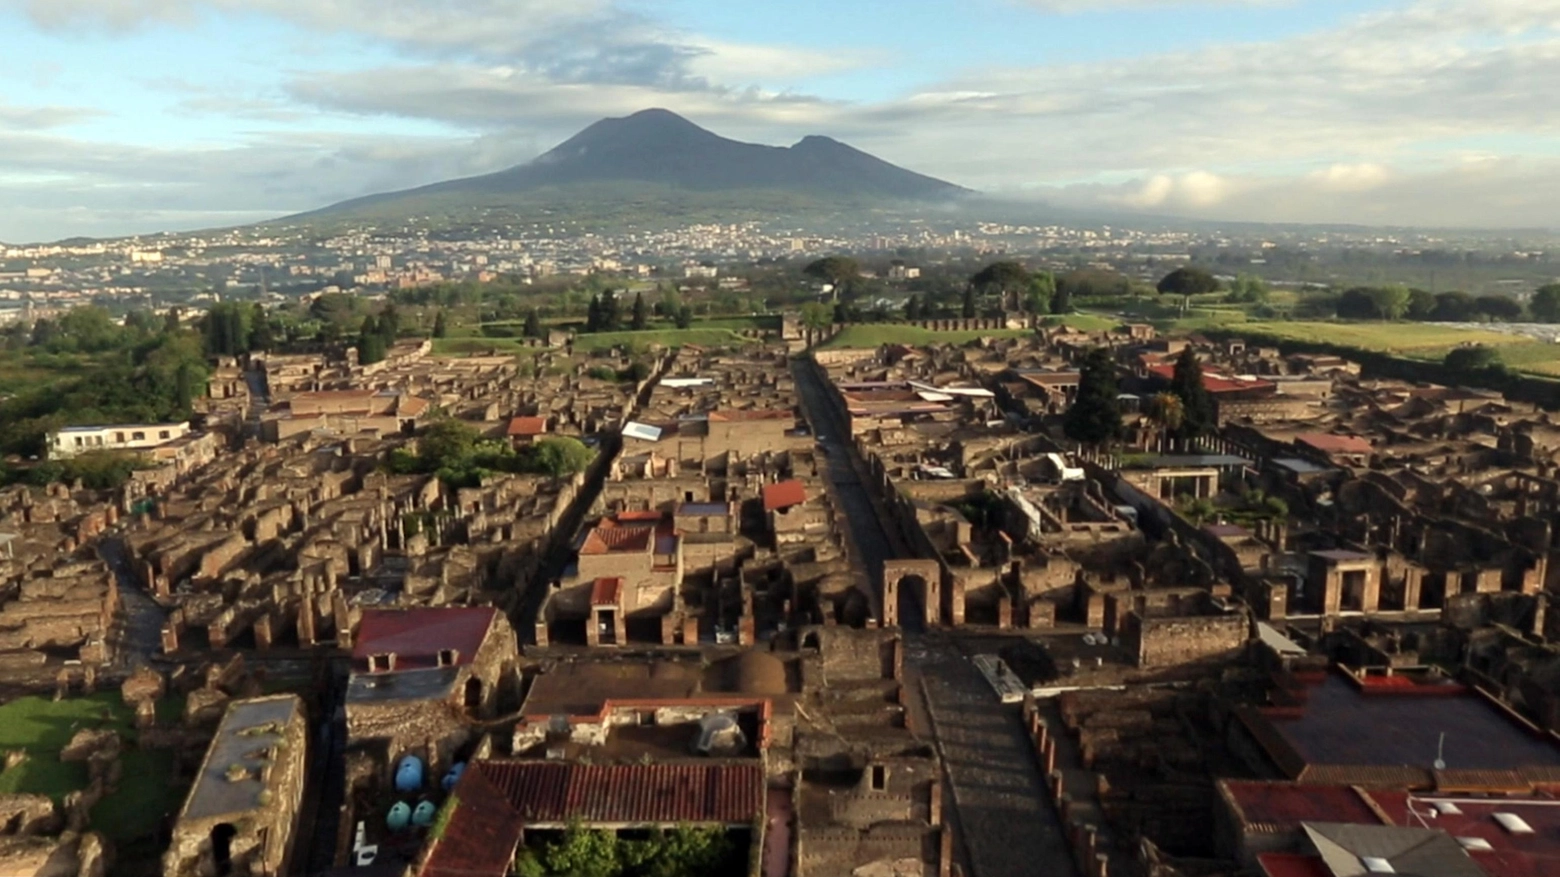 Una vista del Vesuvio, proprio di fronte a Pompei, distrutta nell'eruzione del 79 d.C.